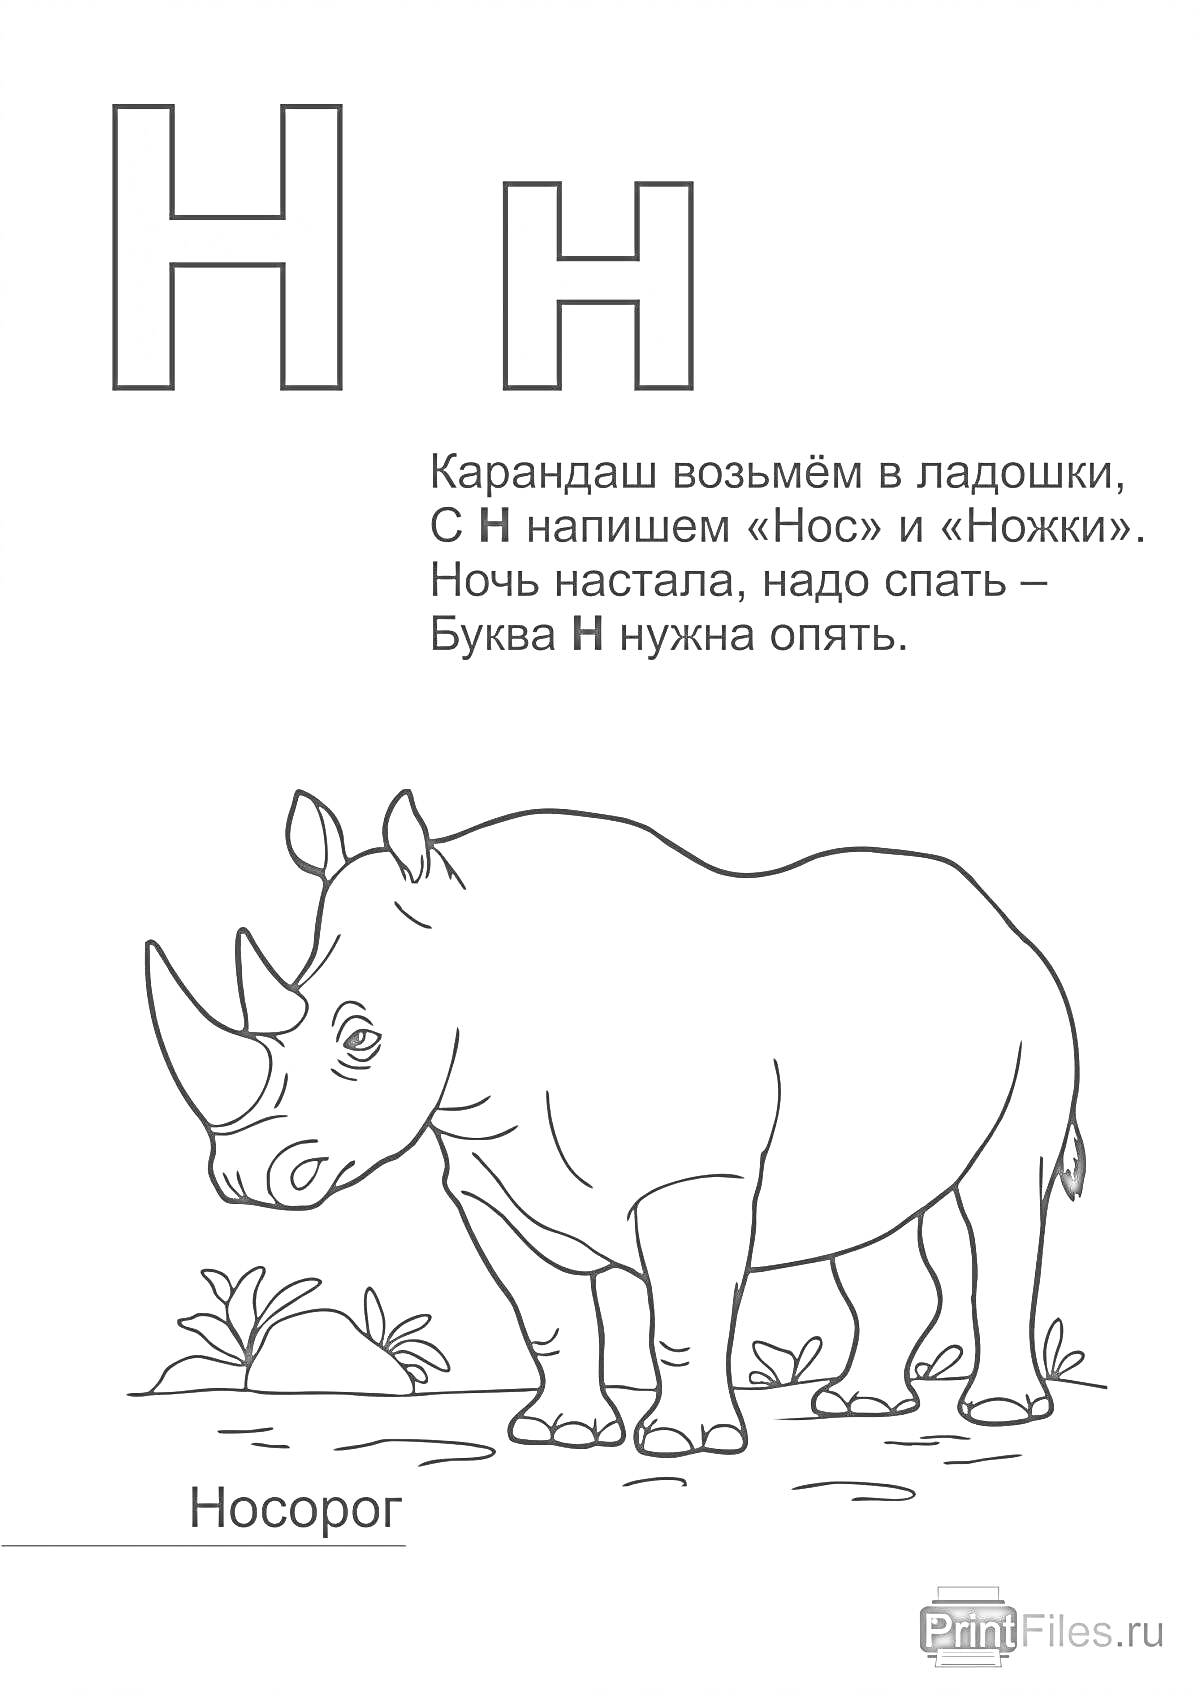 Раскраска Буква Н для детей (носорог, стихотворение про букву Н)